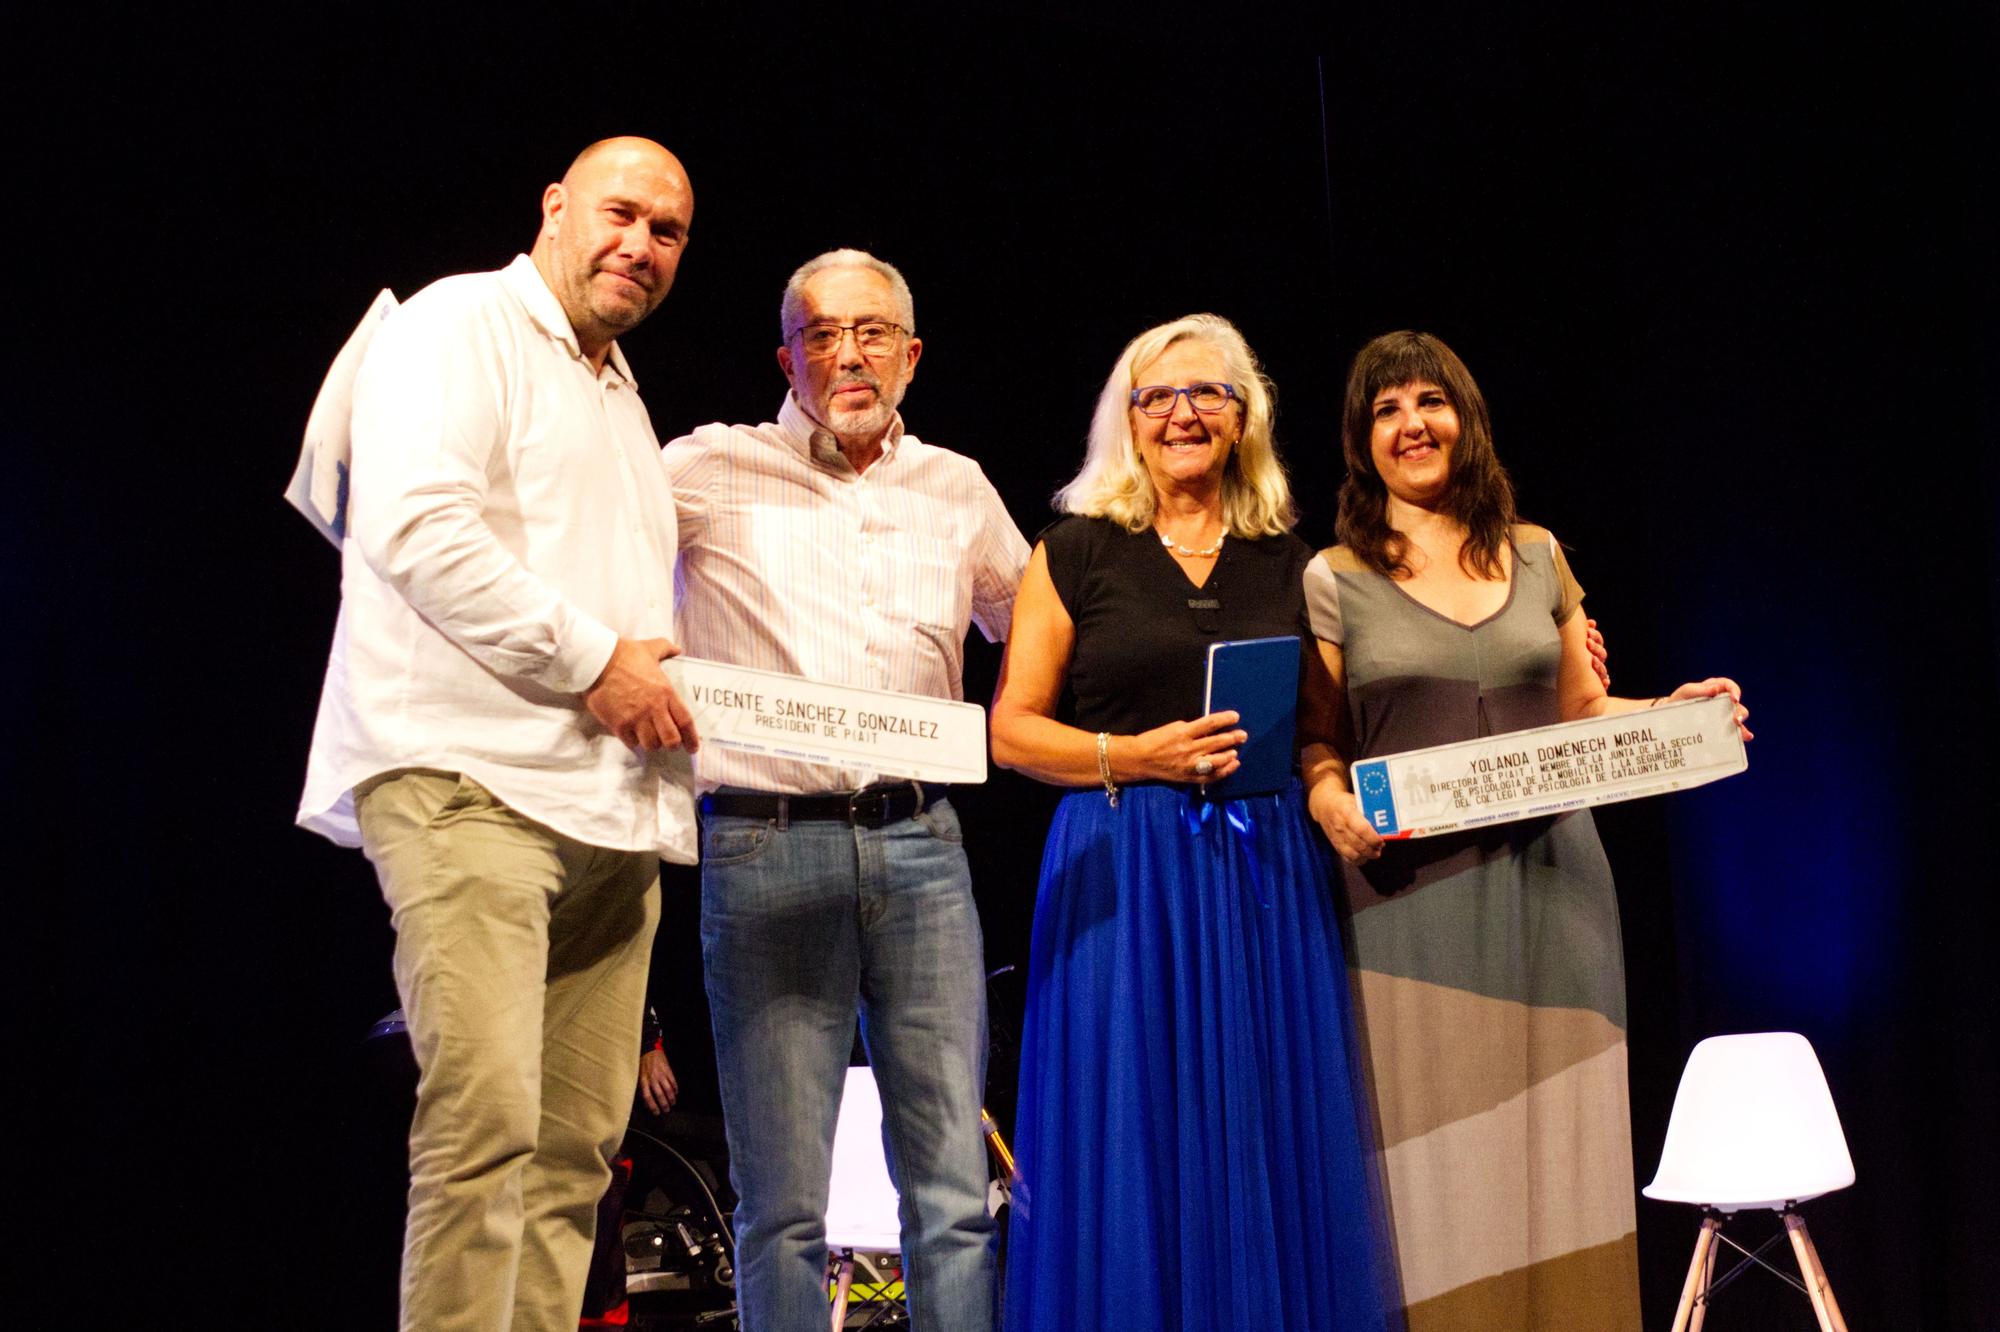 Les Jornades ADEVIC celebrades a Figueres marquen les vies de futur del sector